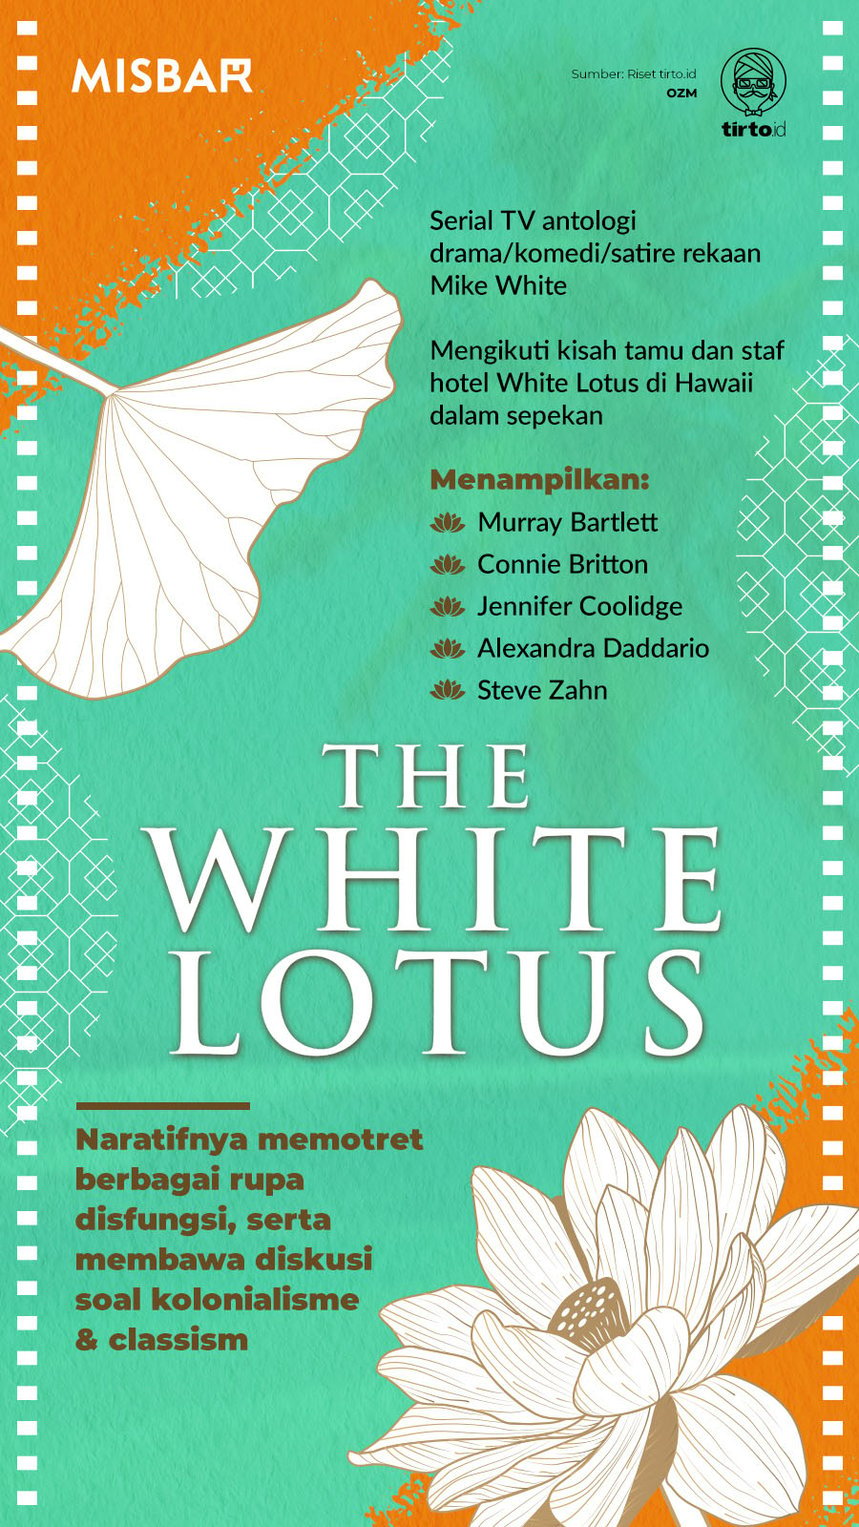 Infografik Misbar The White lotus